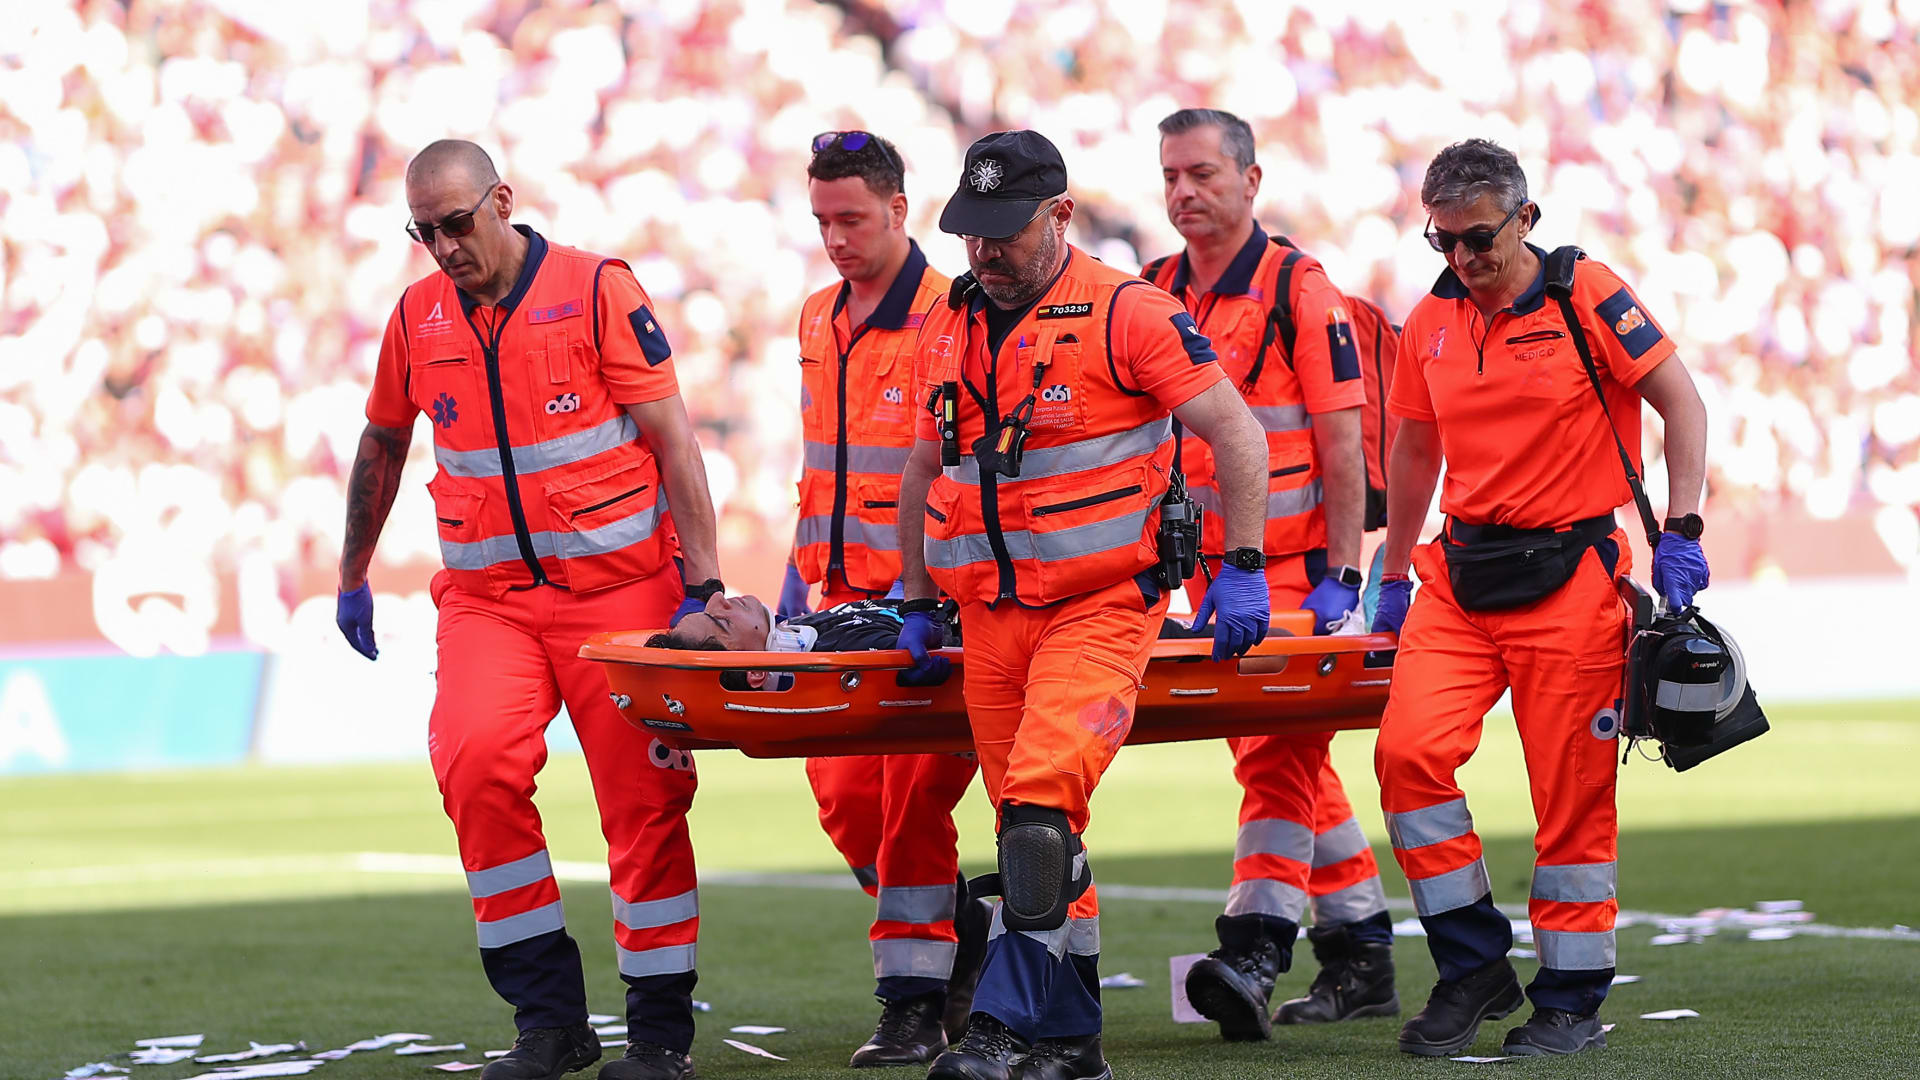 وسط تصفيق الجماهير.. الحارس ياسين بونو يغادر الملعب بعد إصابة خطرة